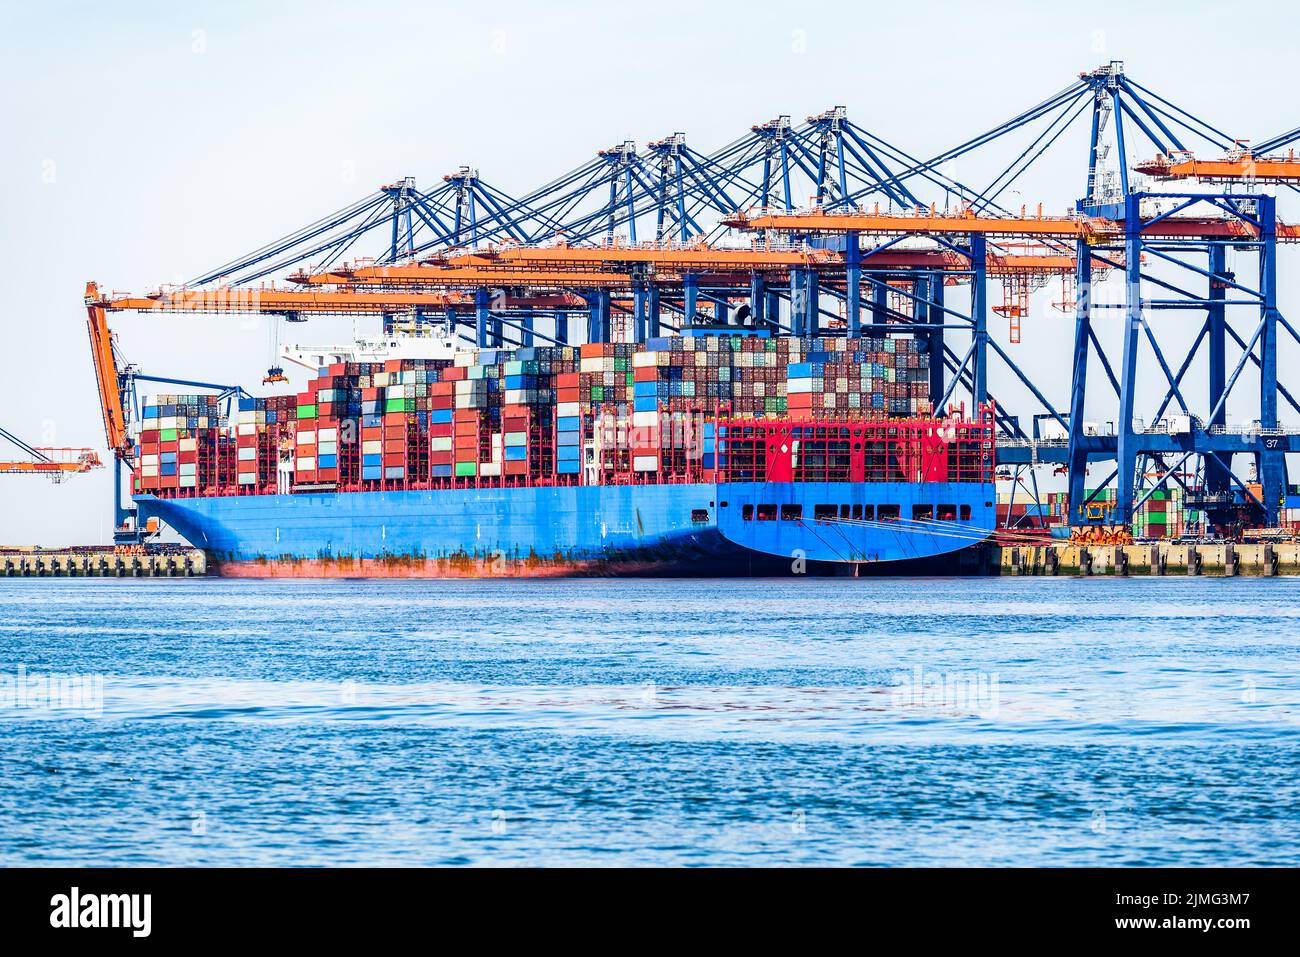 Große Containerschiffe werden an einem klaren Sommertag beladen, während sie an ein kommerzielles Dock mit hohen Portalkranen gebunden werden Stockfoto